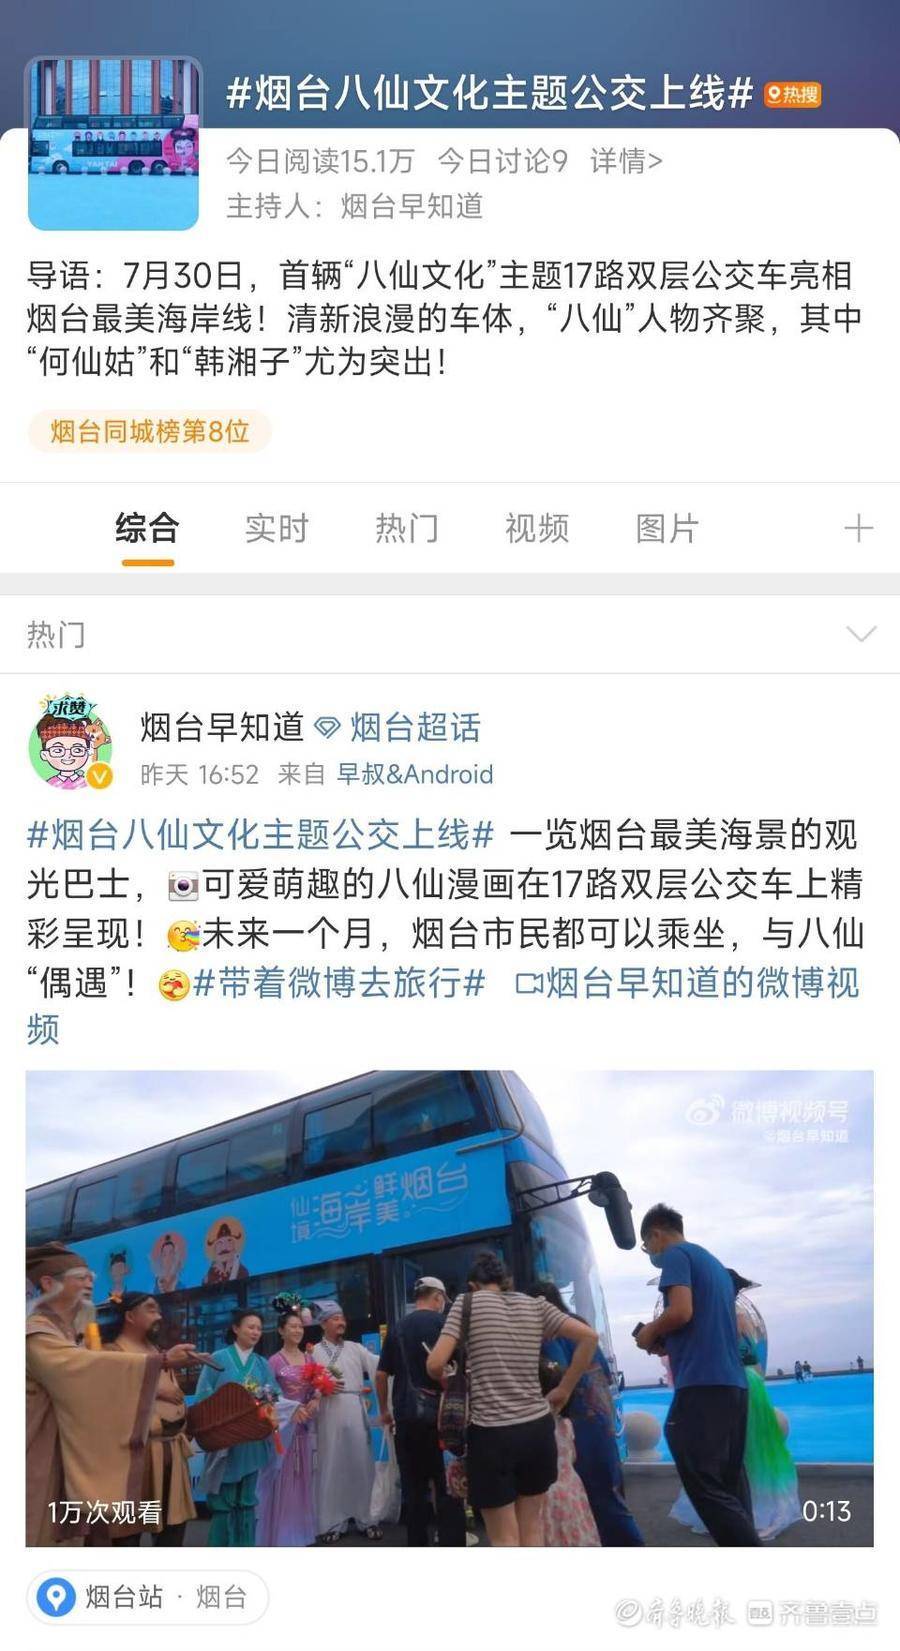 烟台最热！“八仙文化”主题公交车连续两天霸榜微博同城热搜